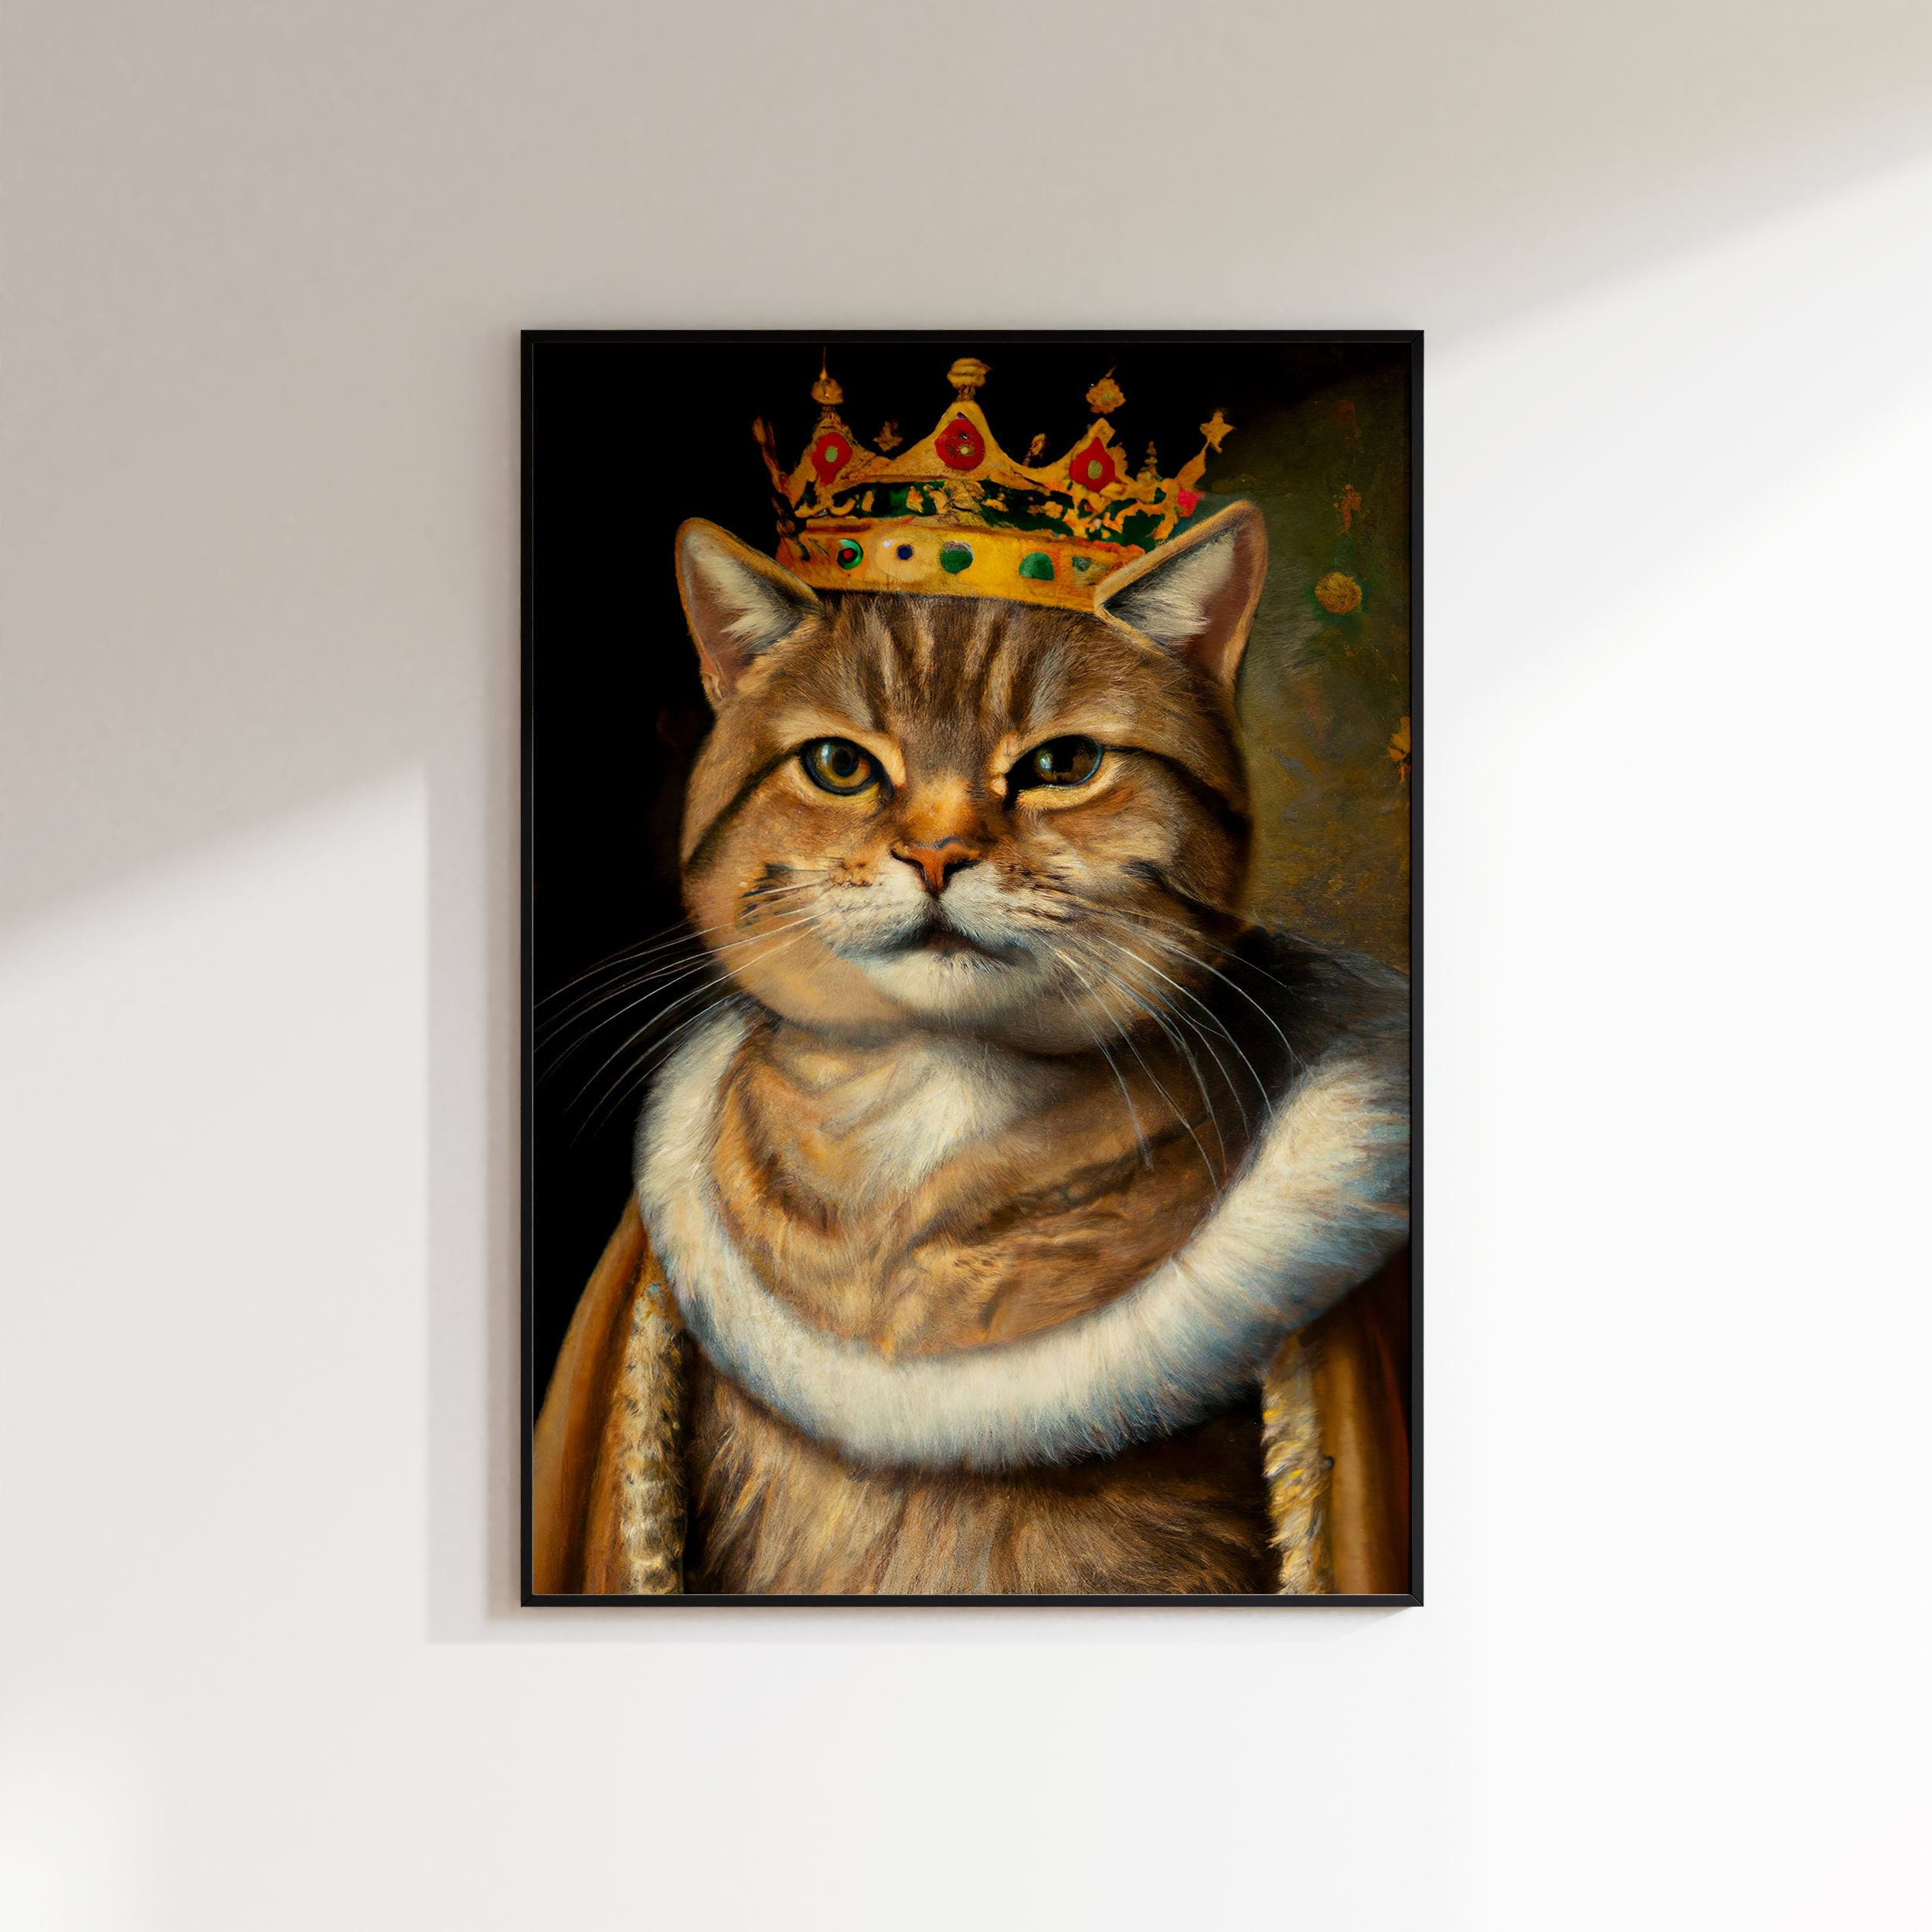 Queen cat portrait